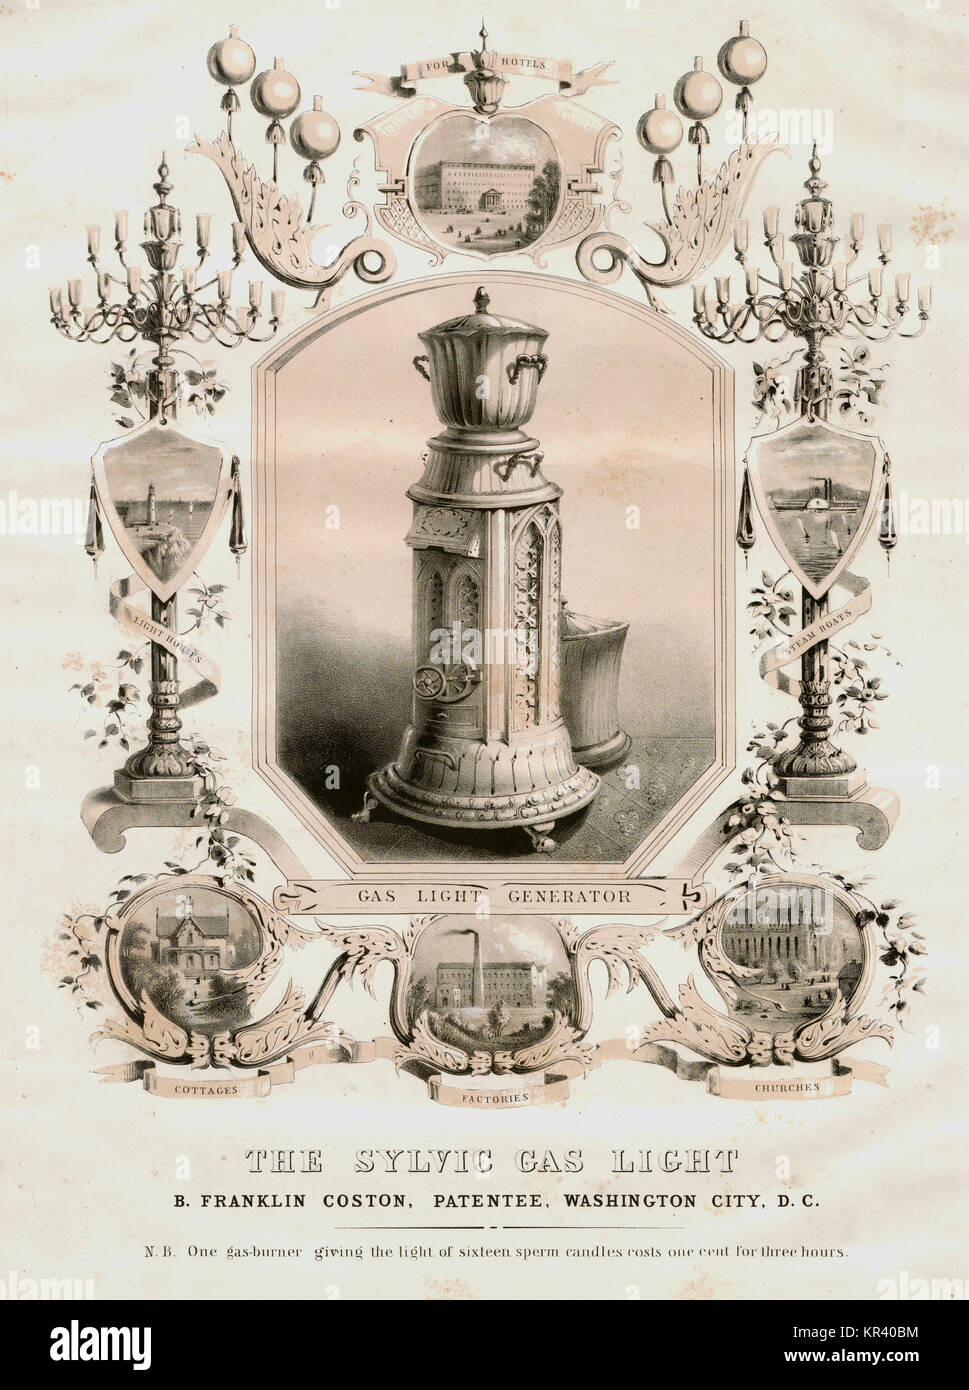 Die sylvic Gas light B.Franklin Coston, Patentinhaber, Washington, D.C. - Ein gasbrenner das Licht von sechzehn Samenzellen Kerzen kosten 1 Cent für drei Stunden. Stockfoto